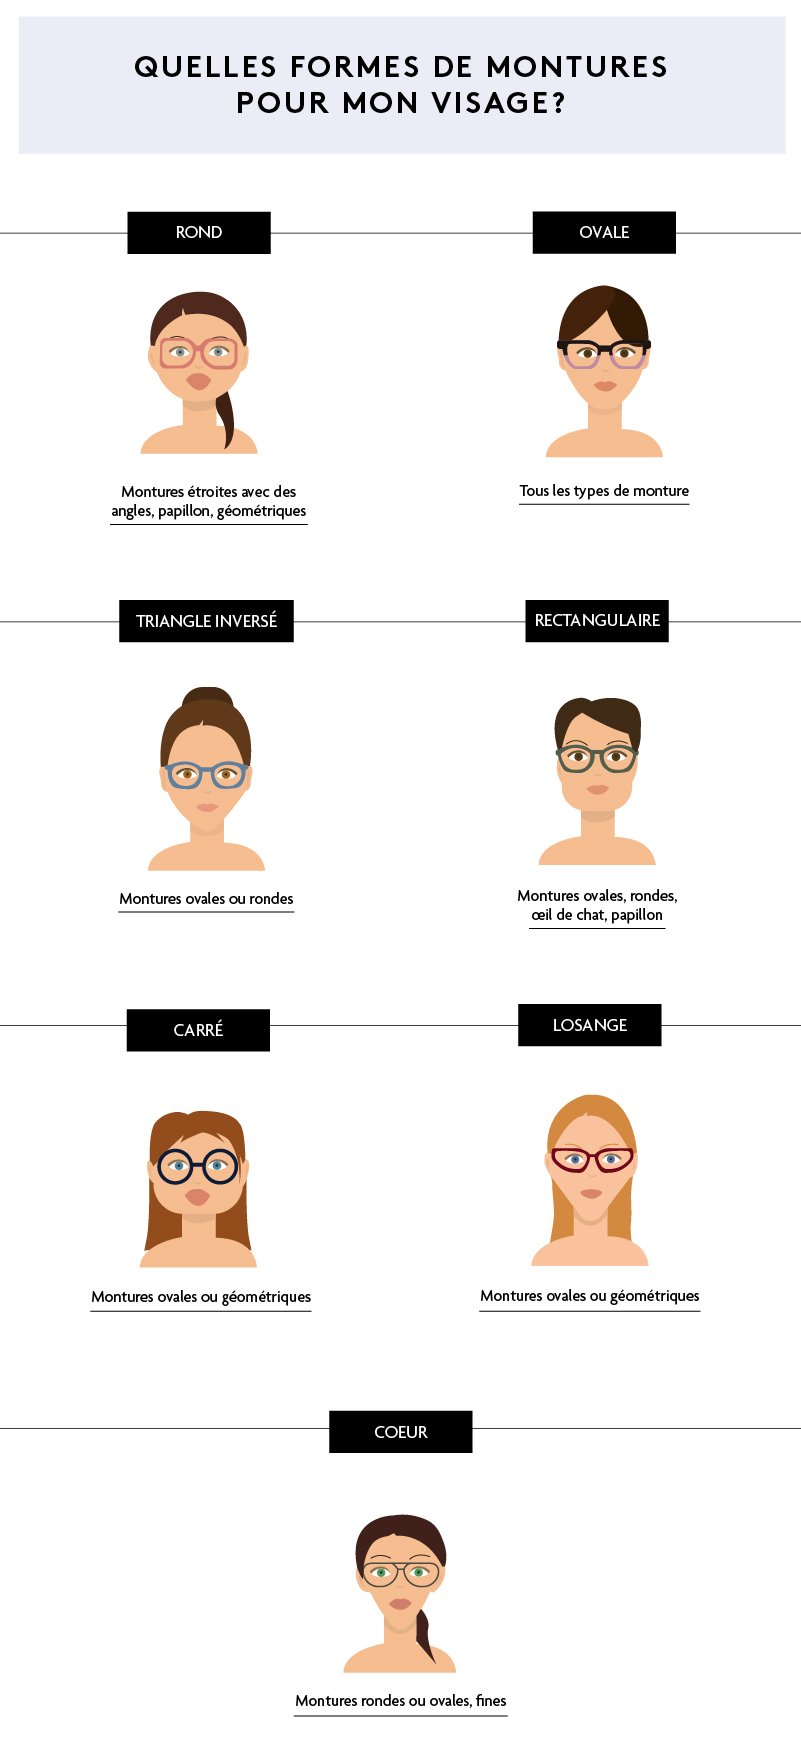 Visage oblong Homme : Comment choisir et quelles lunettes de vue